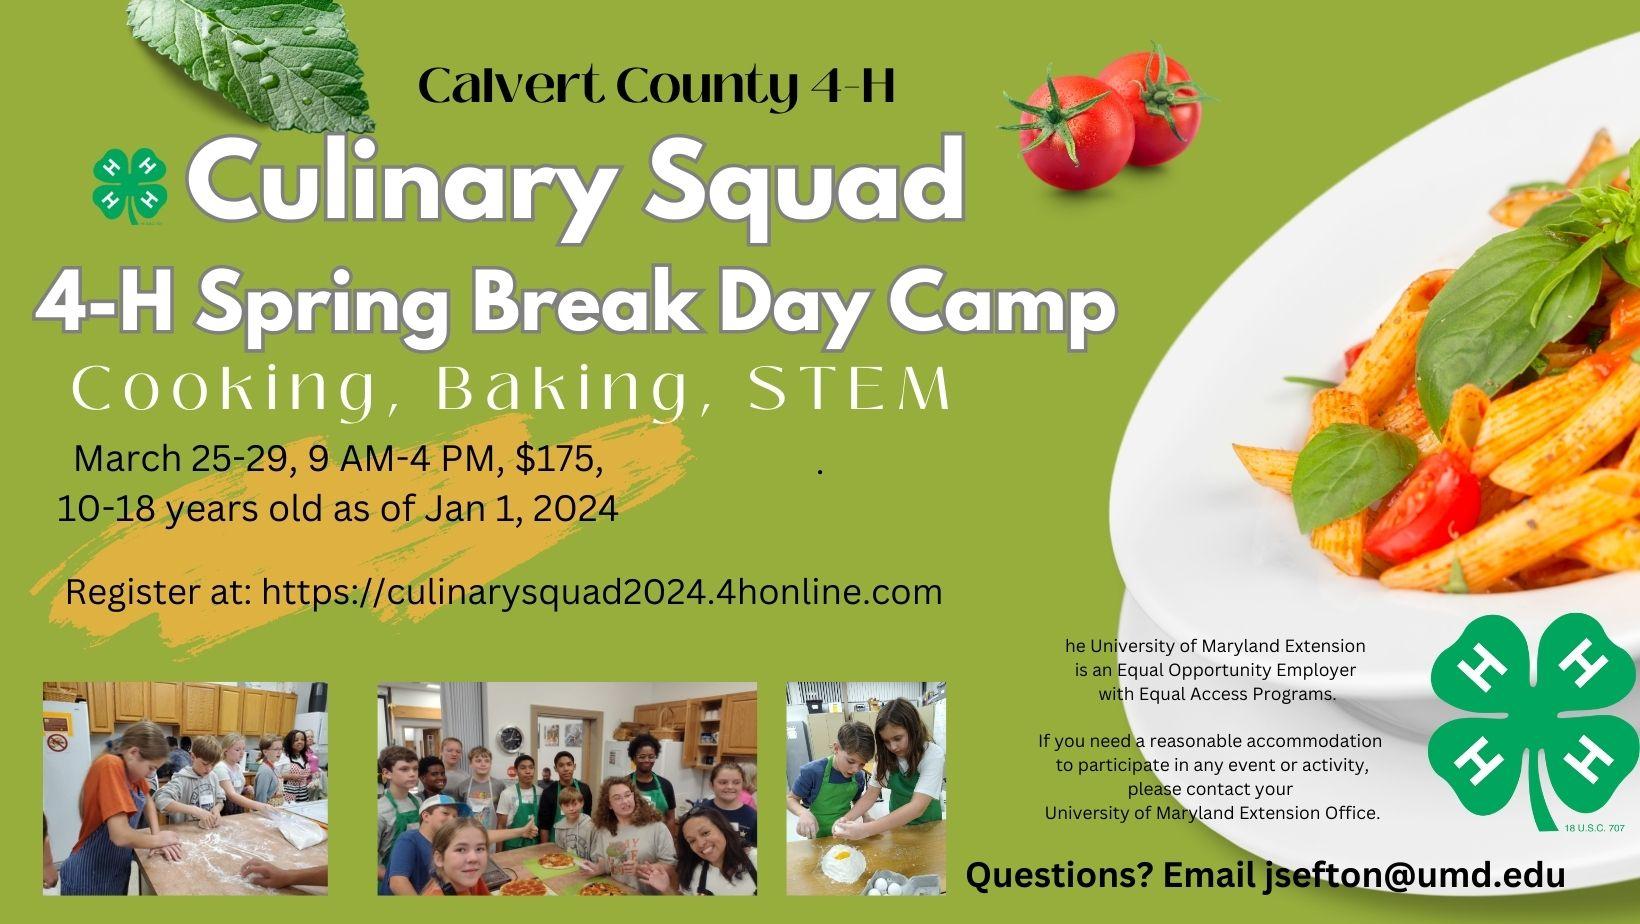 Calvert 4-H Culinary Squad Spring Break Camp